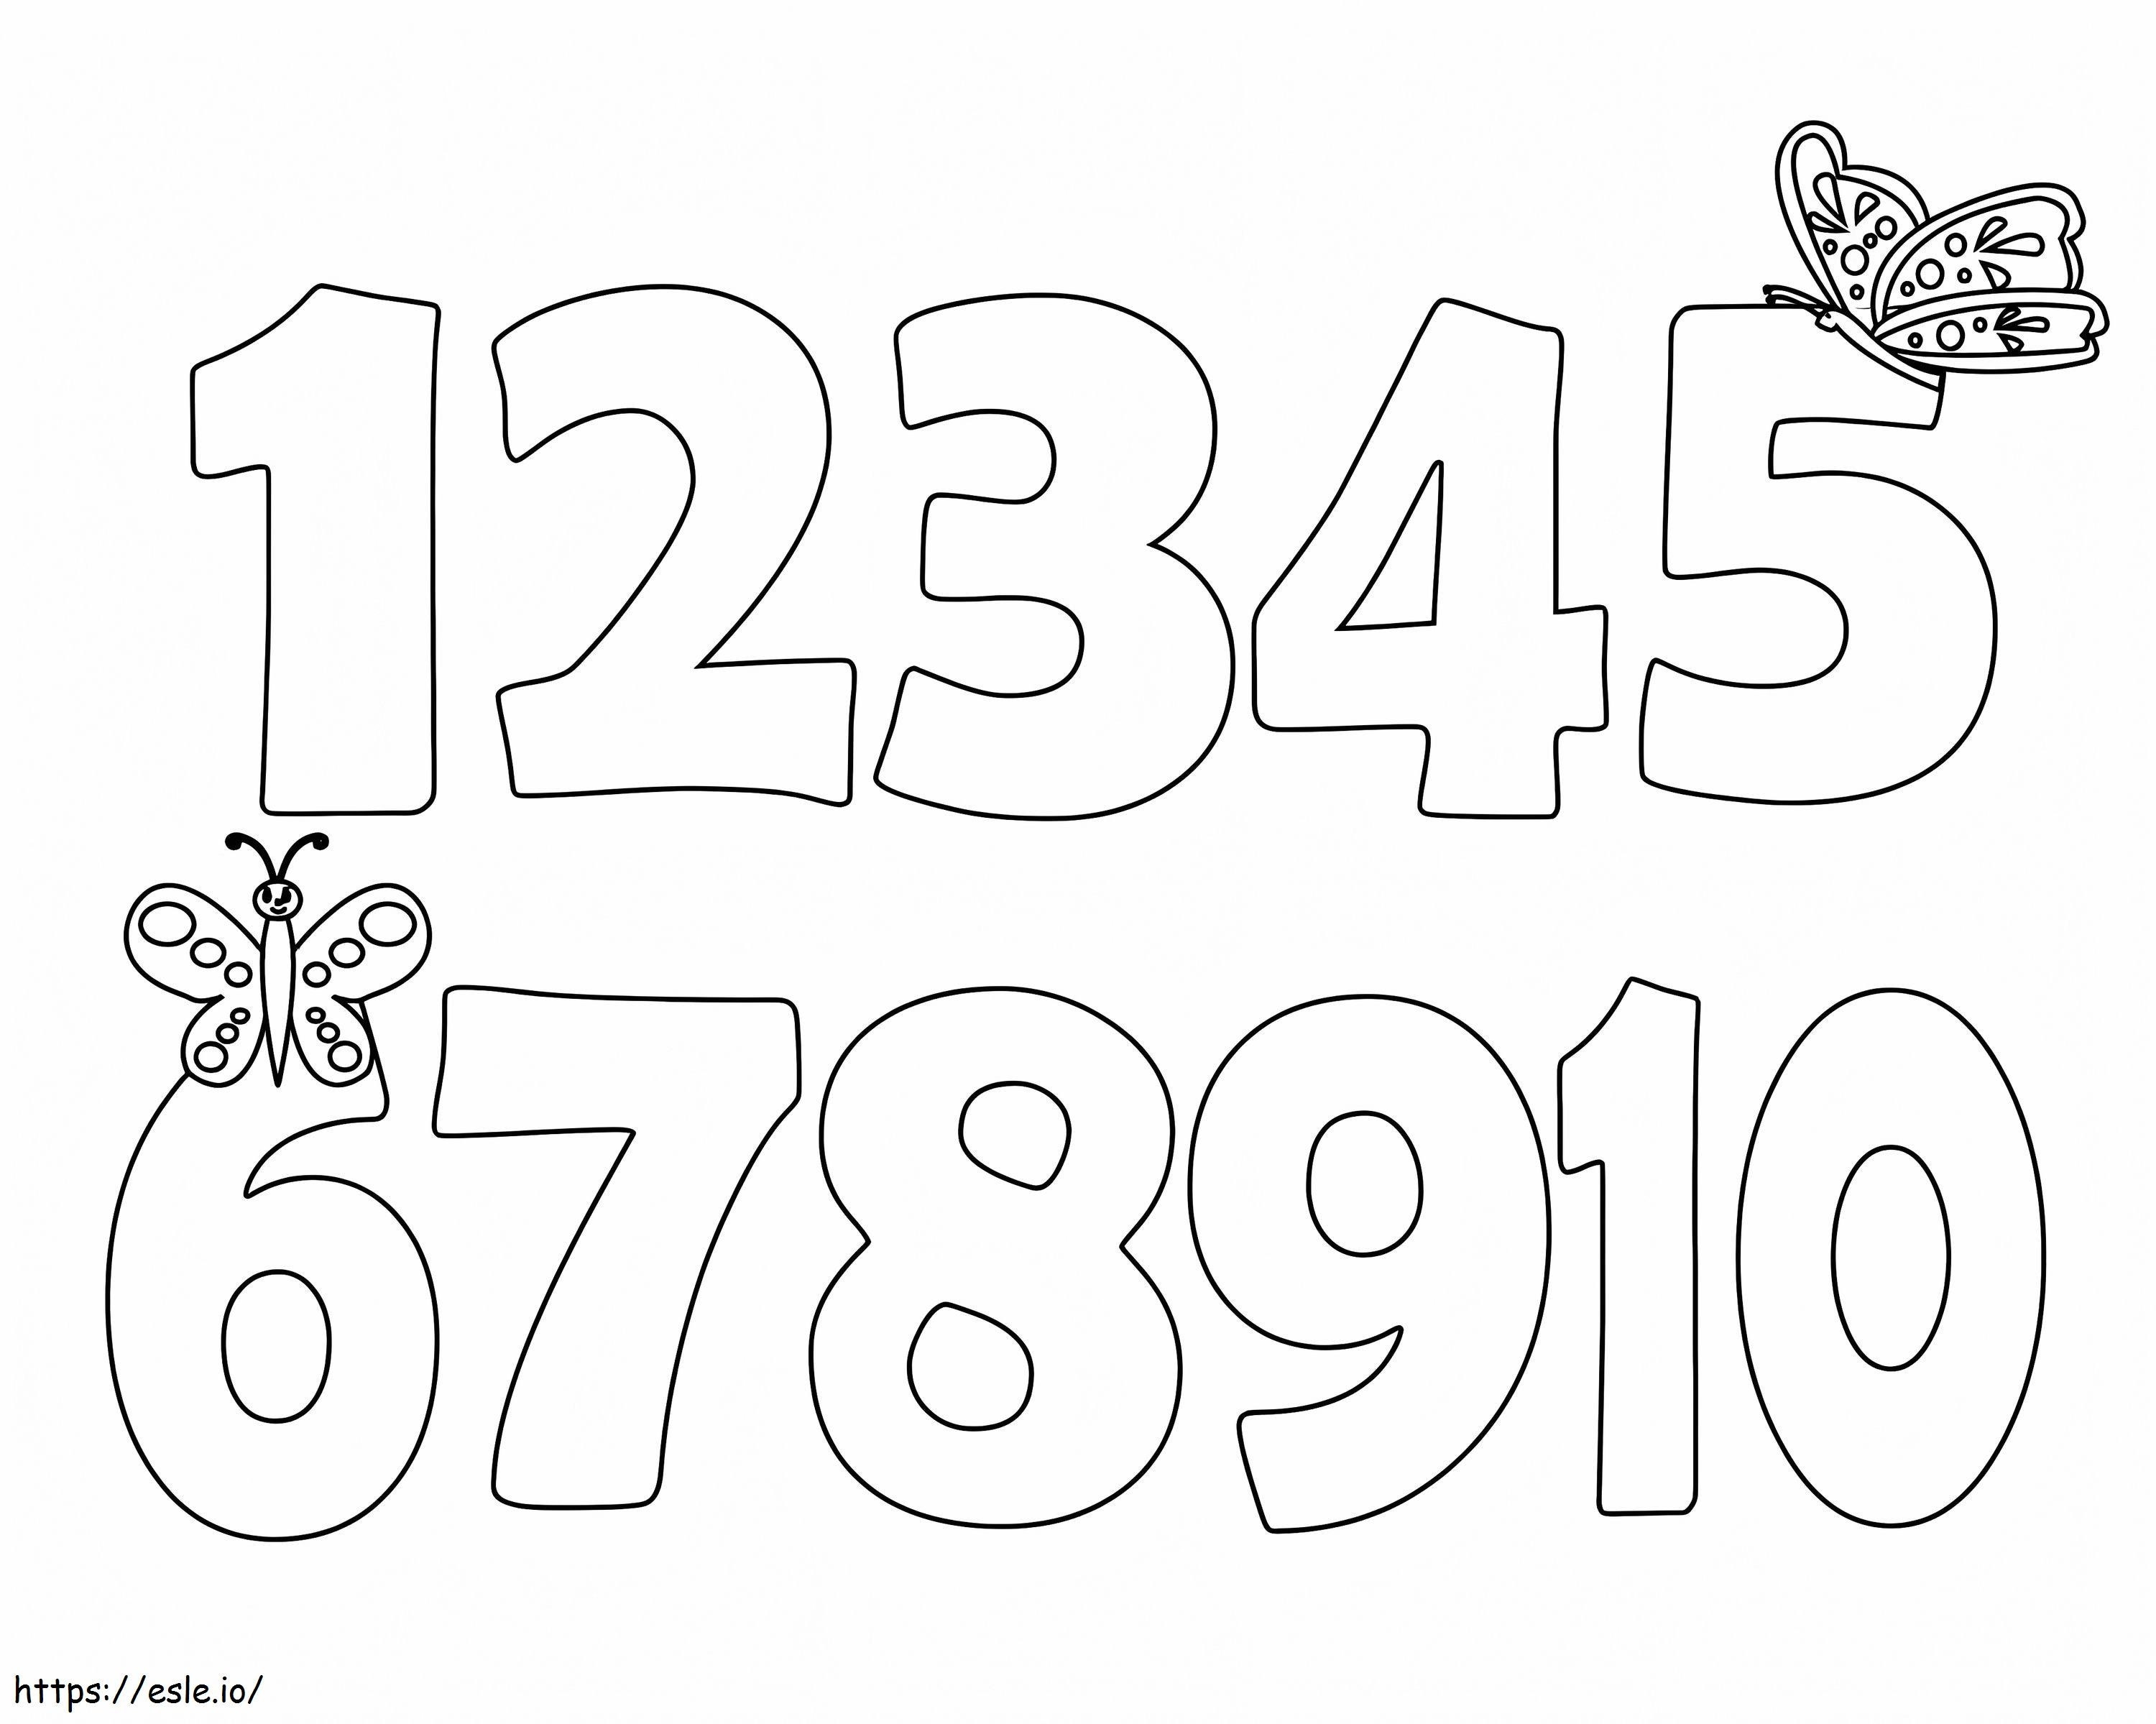 1'den 10'a Kadar Sayılar Ve Kelebek boyama